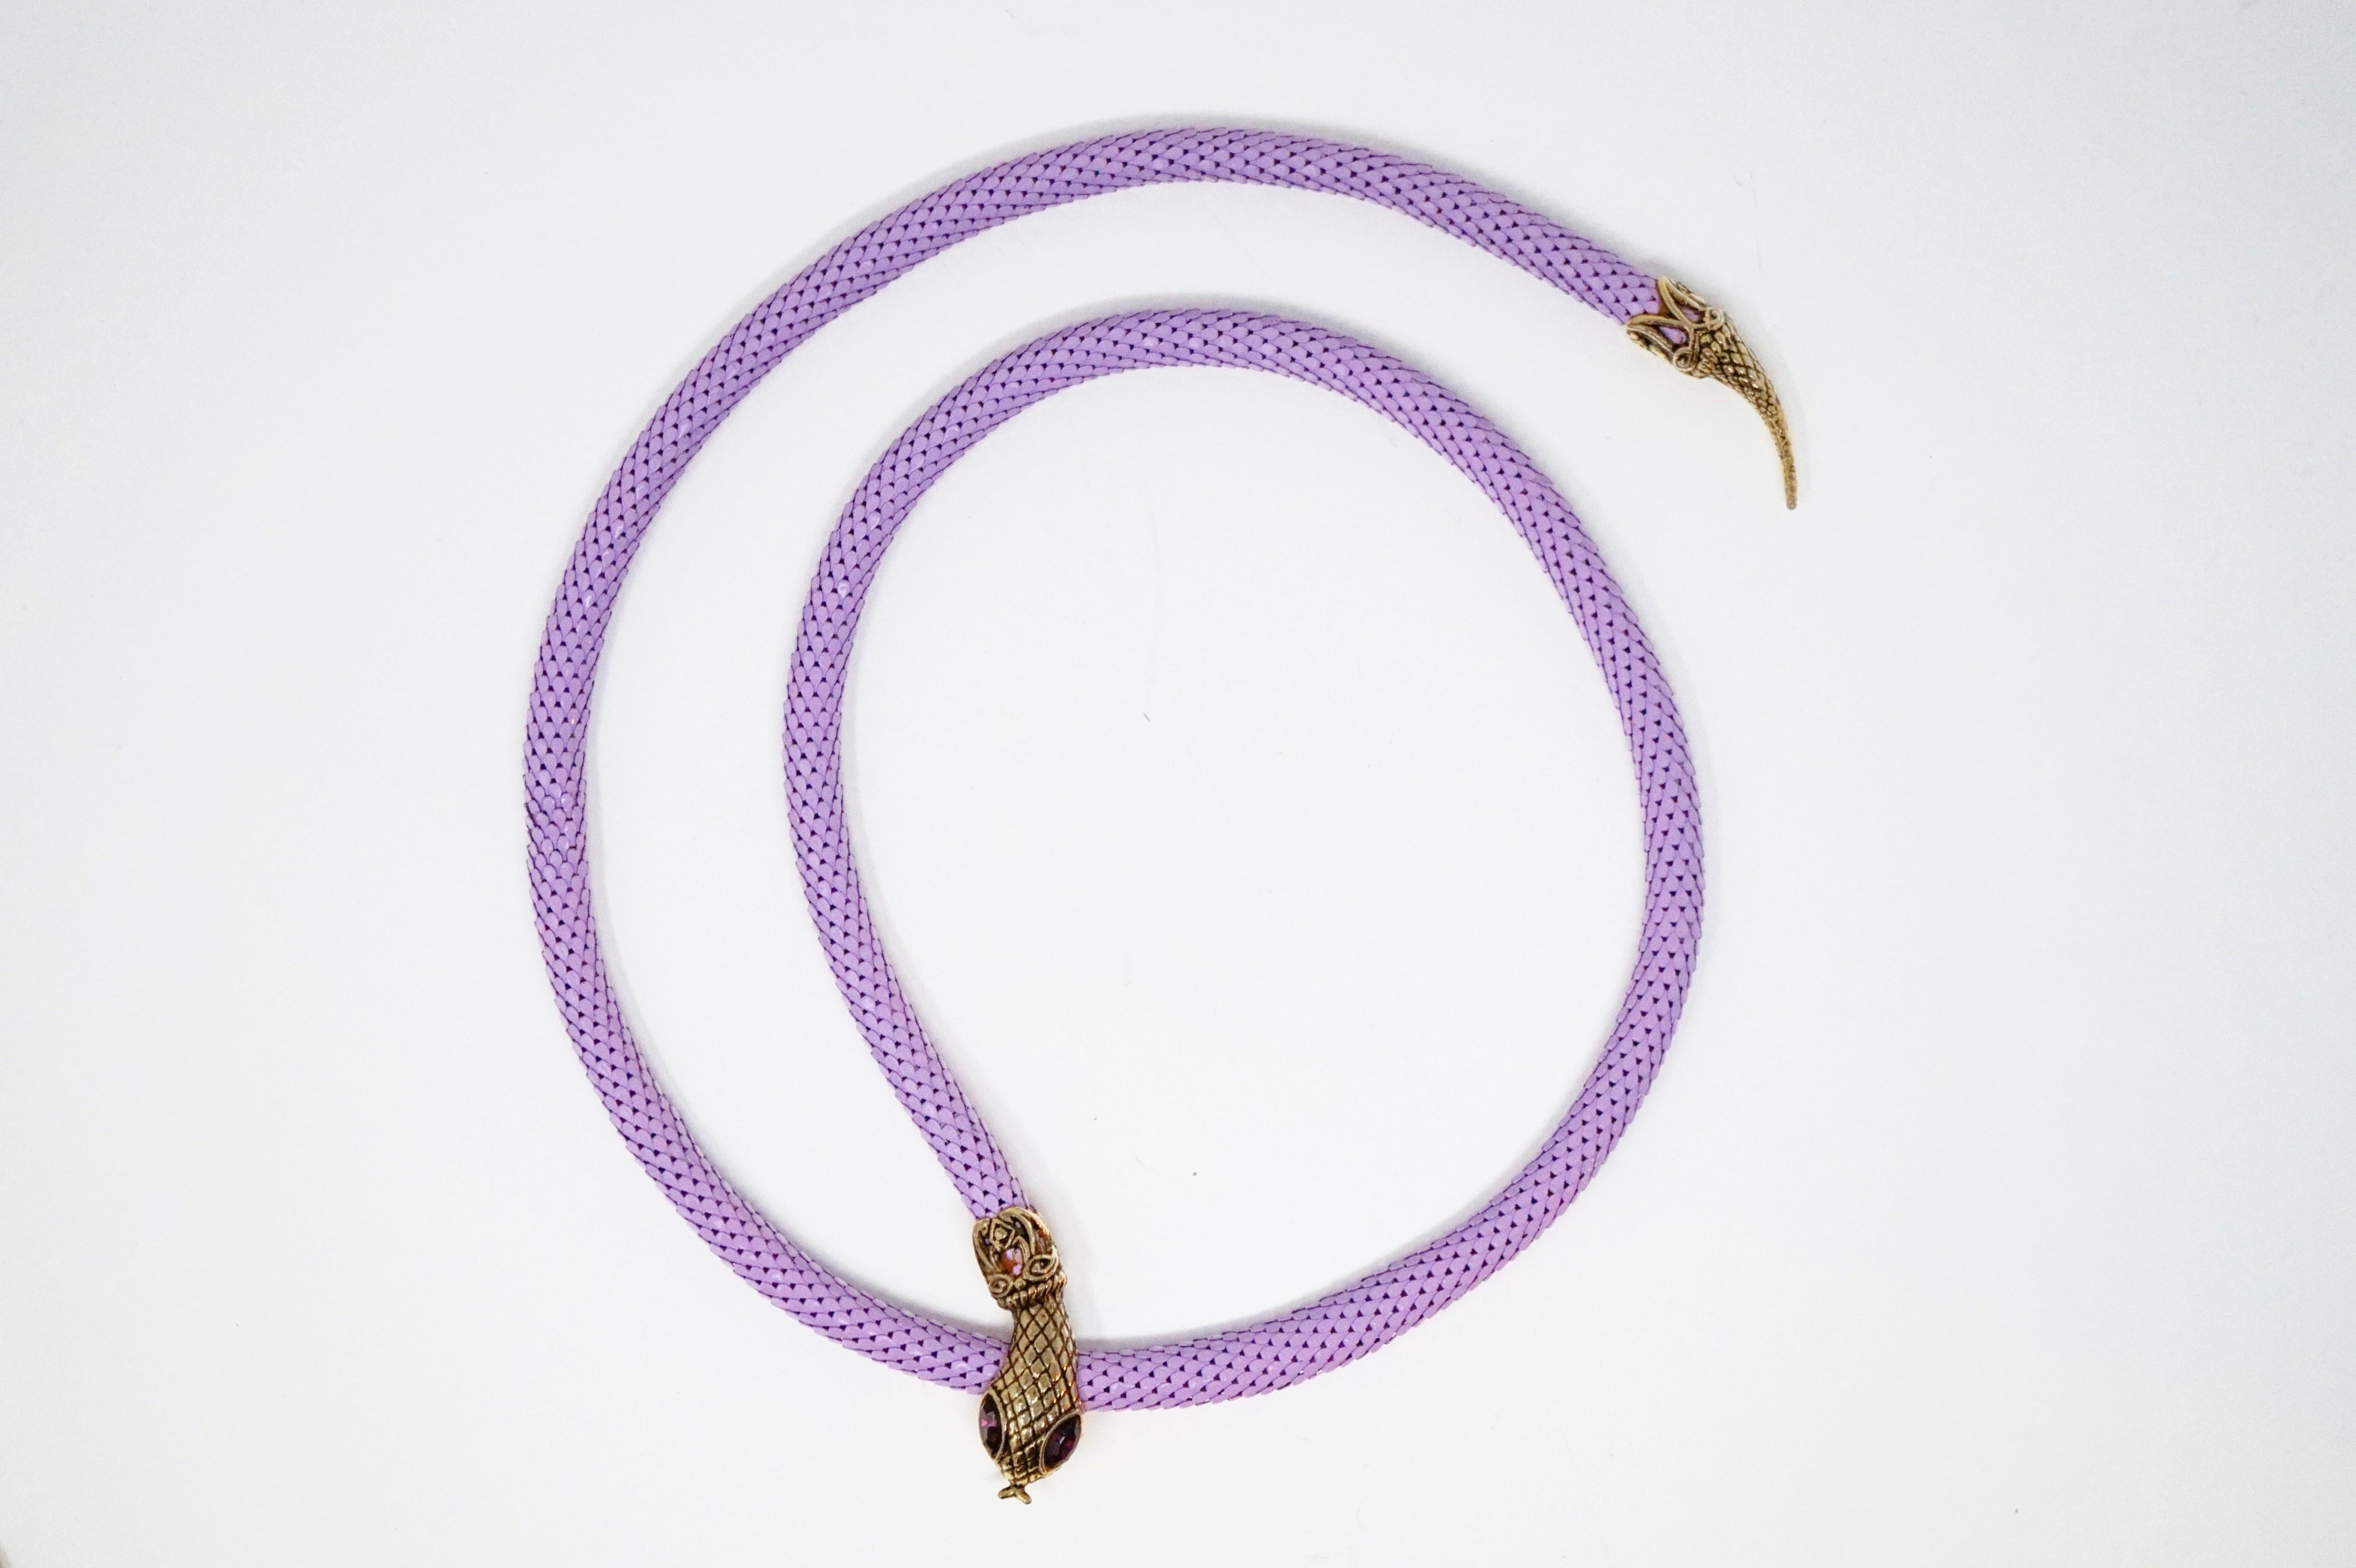 1980s Lavender Mesh Snake Belt or Necklace by DL Auld Co, Signed 4